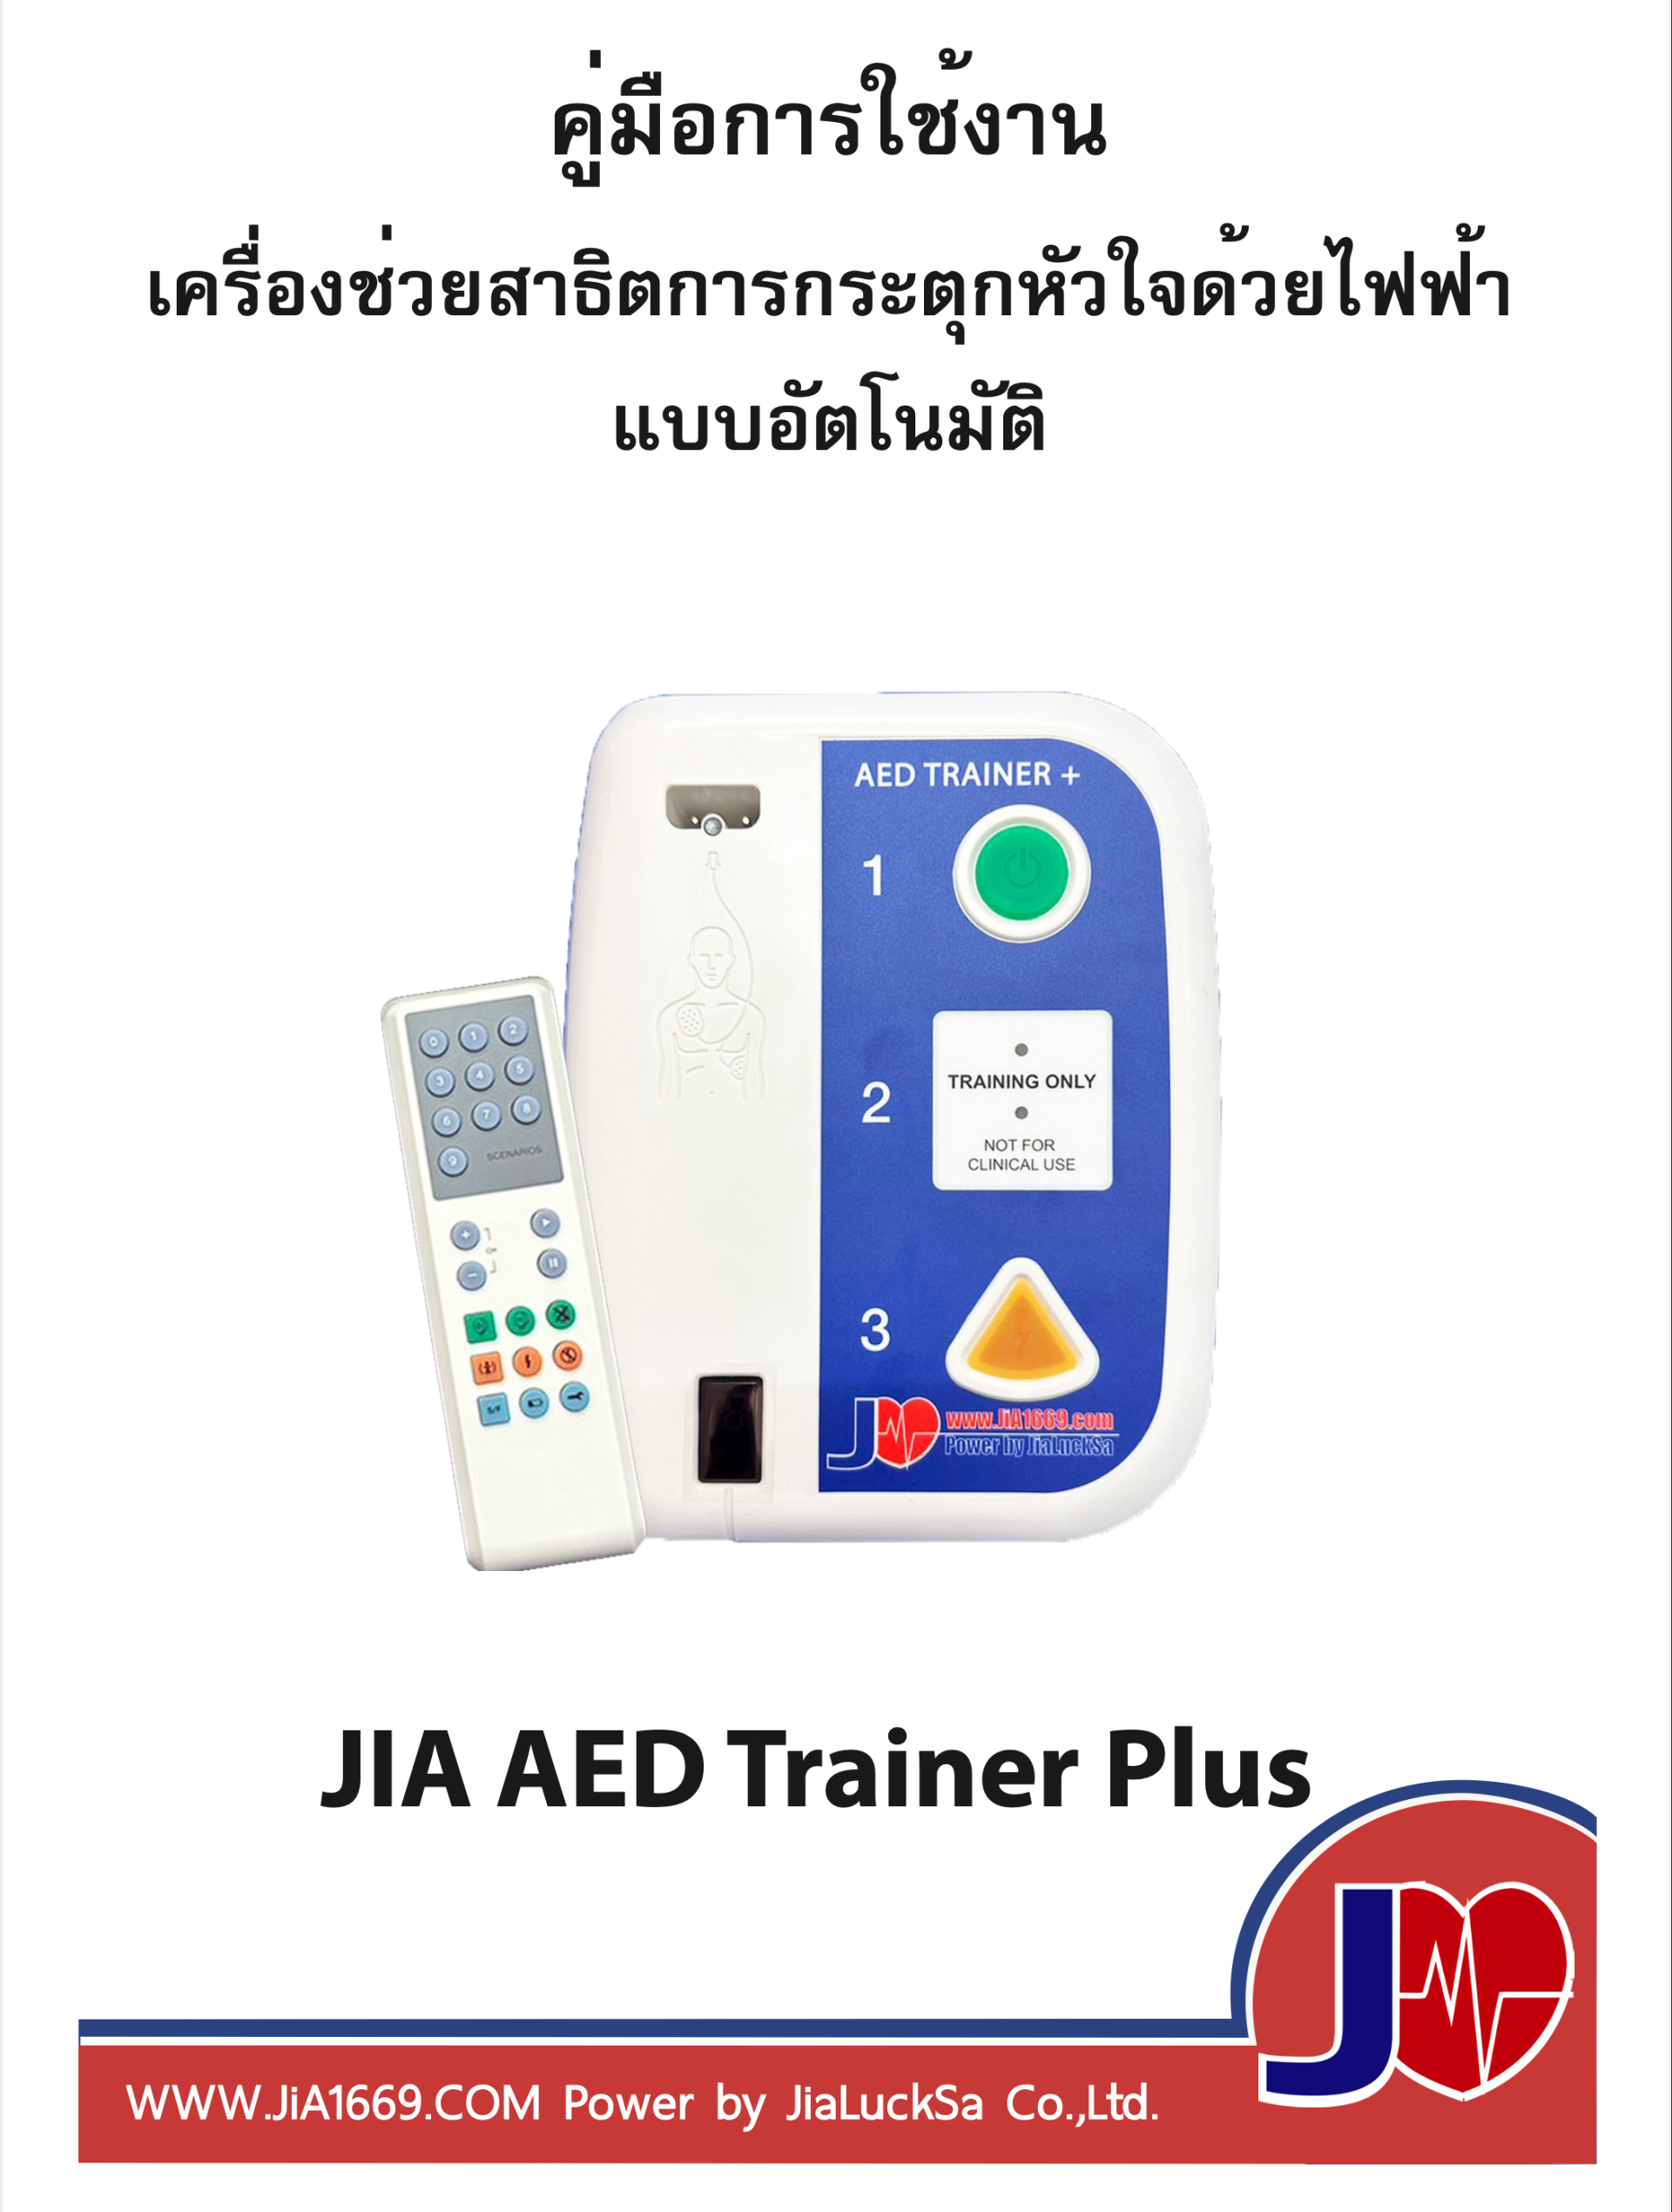 JIA AED Trainer Plus manuals